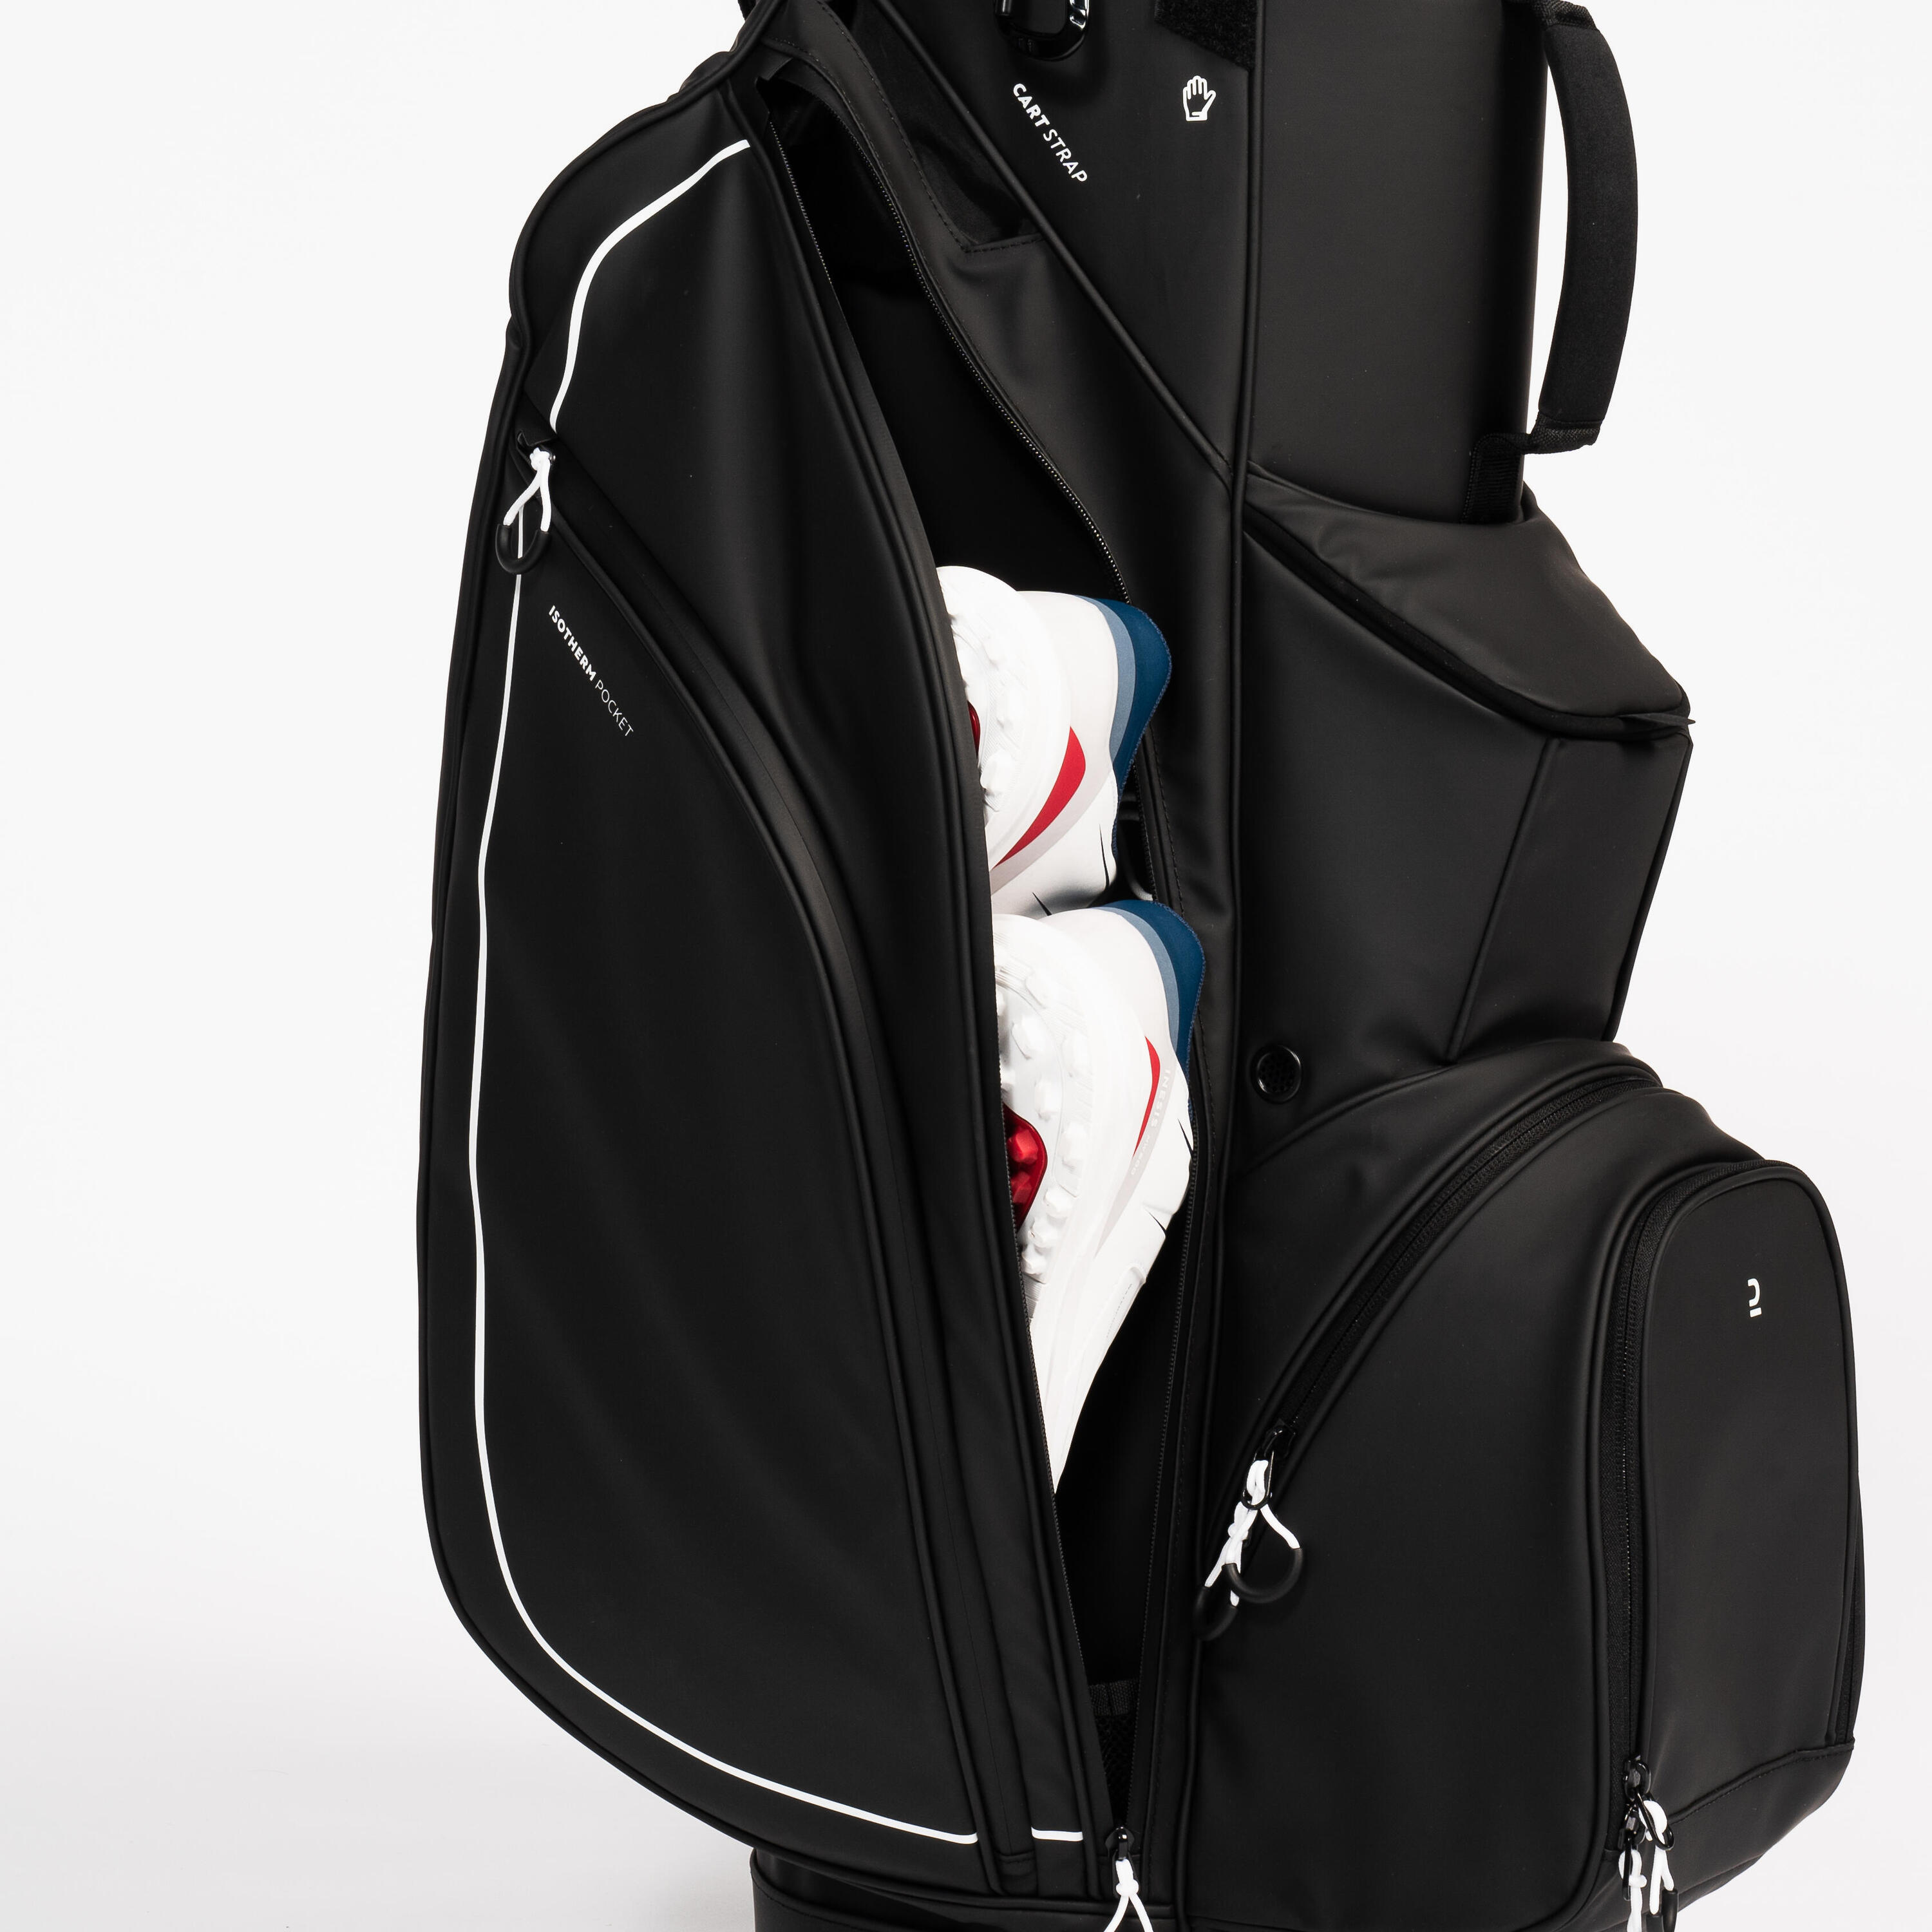 Golf trolley bag waterproof – INESIS cart black 5/12